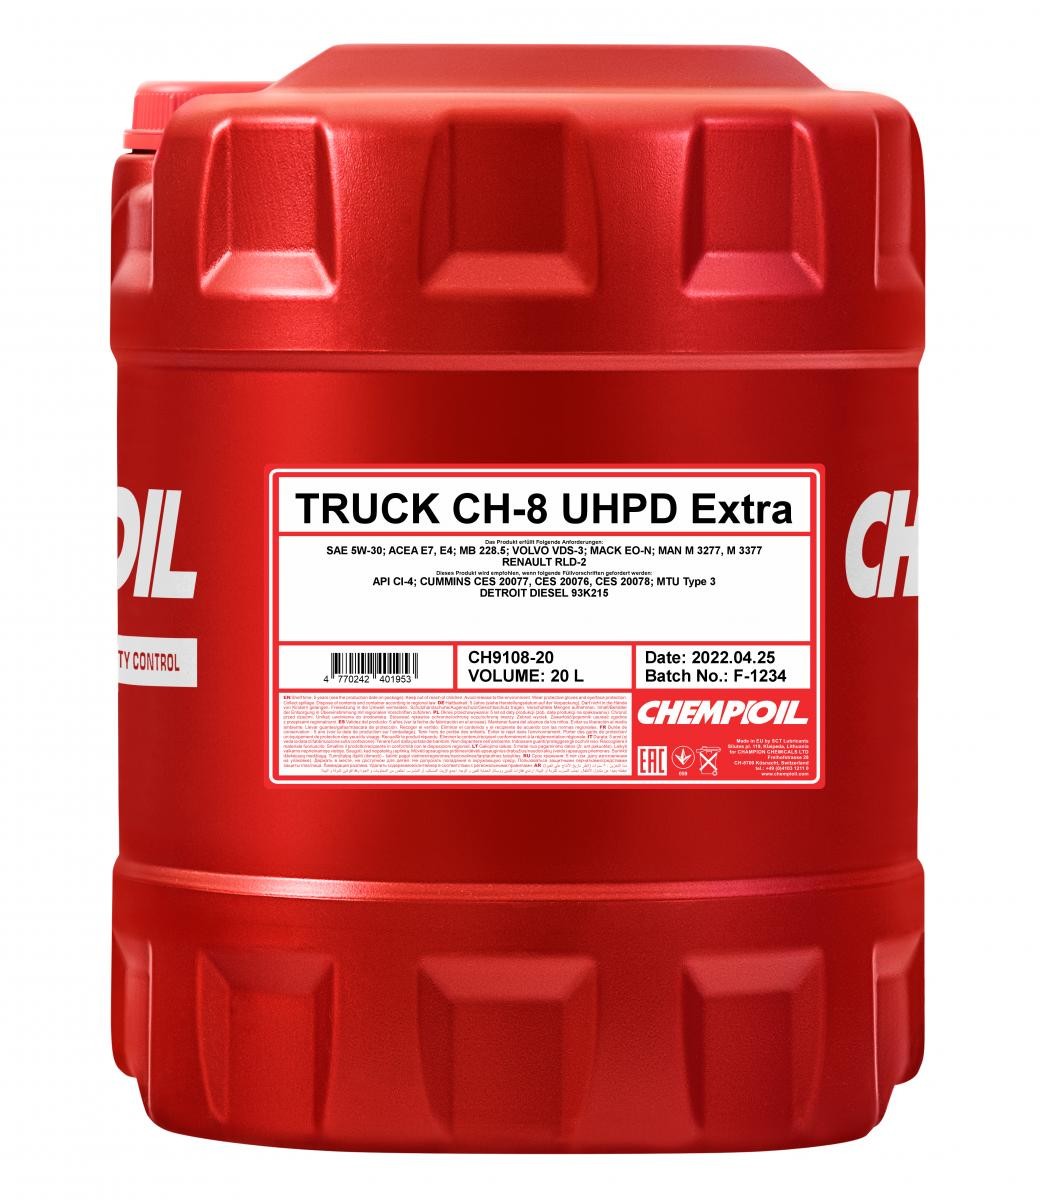 CH9108-20 CHEMPIOIL Oil HYUNDAI 5W-30, 20l